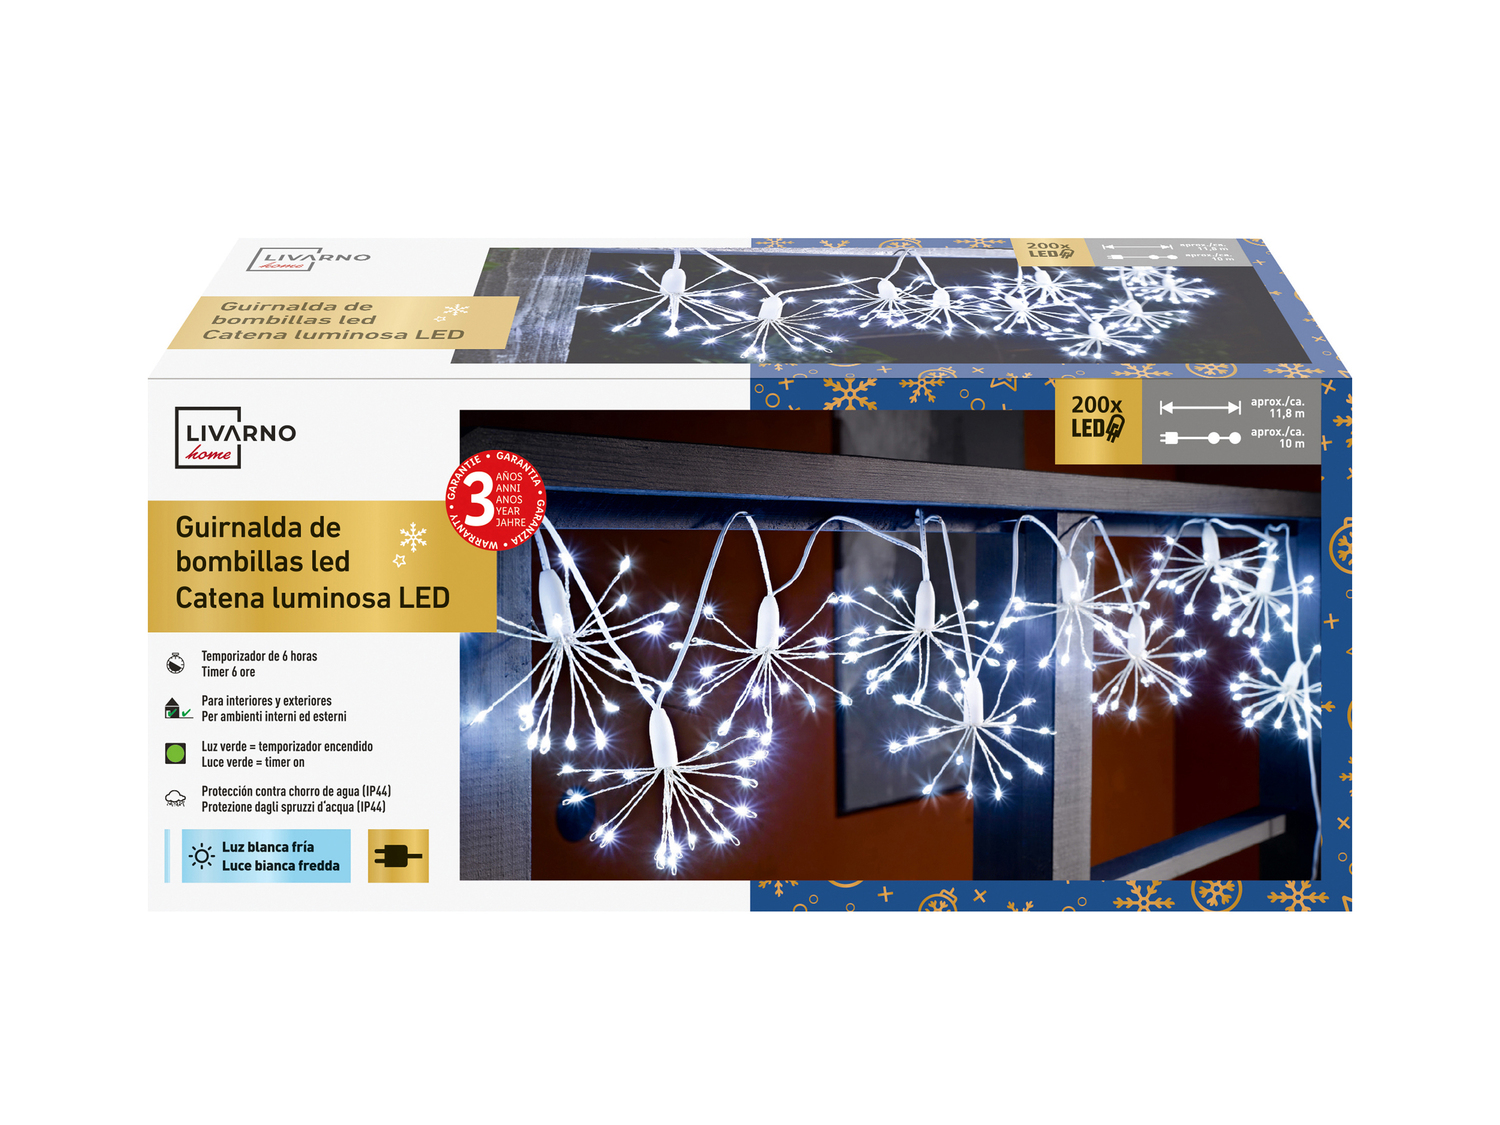 Luci natalizie 200 LED Livarno, prezzo 11.99 &#8364; 
- Per ambienti interni ...